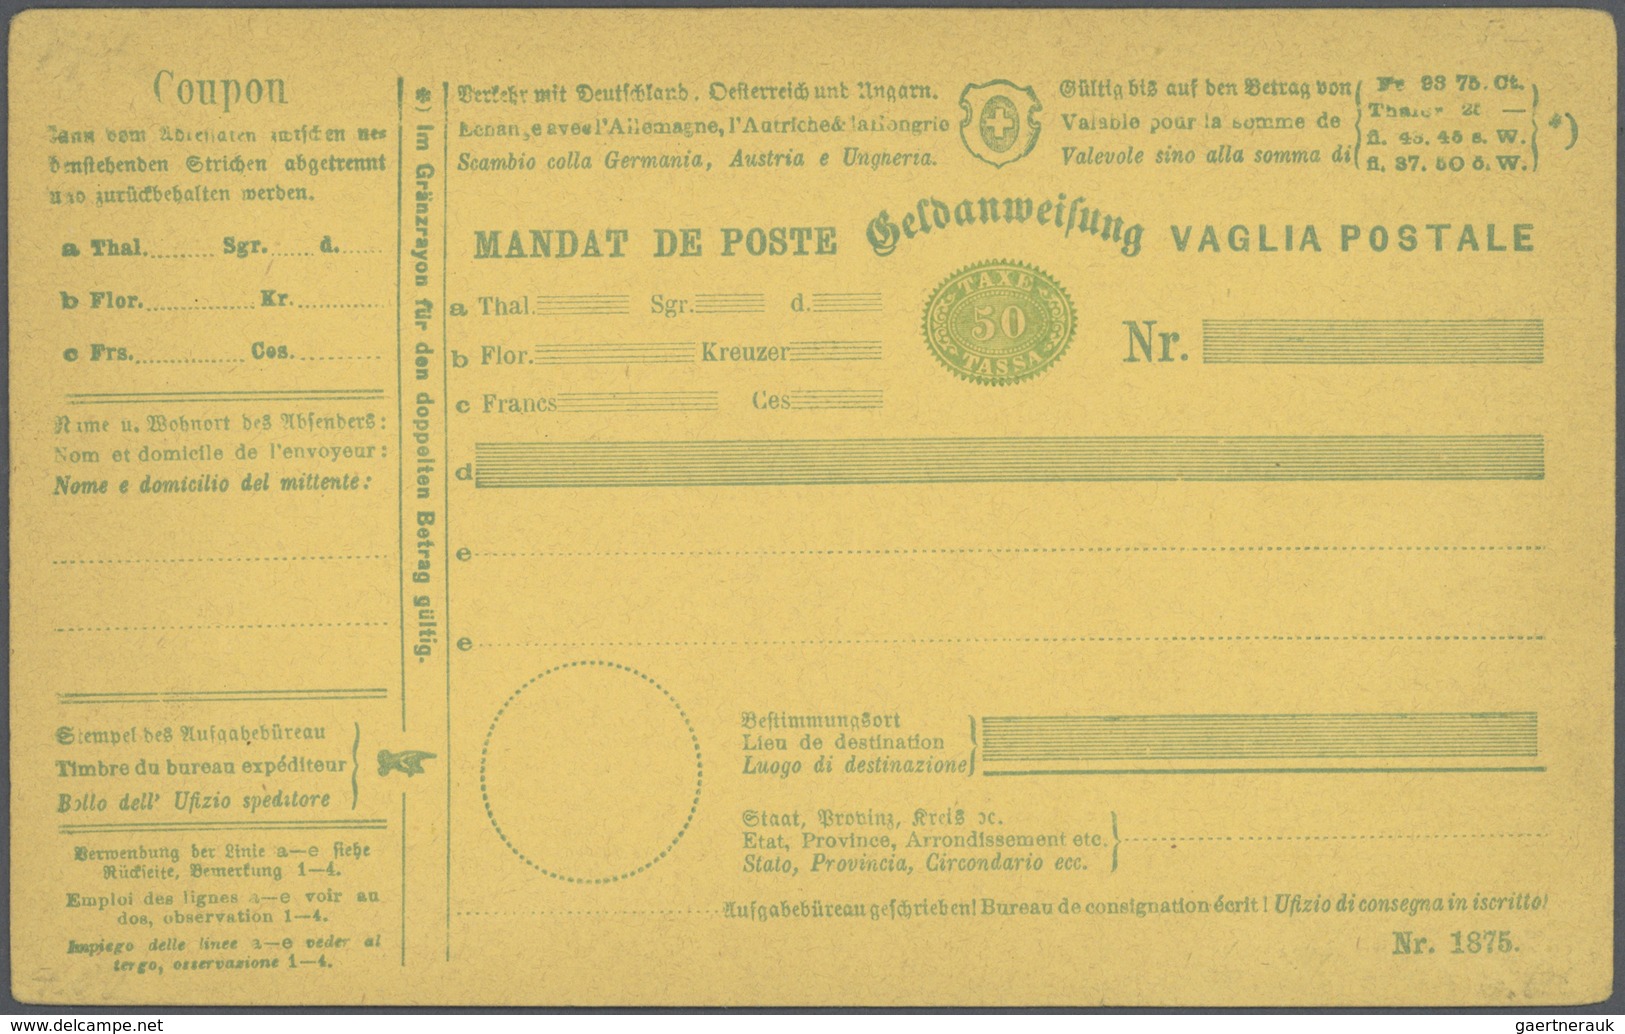 28164 Schweiz - Ganzsachen: 1867-1905 GELDANWEISUNGEN: Spezialisierte Sammlung von 94 Geldanweisungen, mei